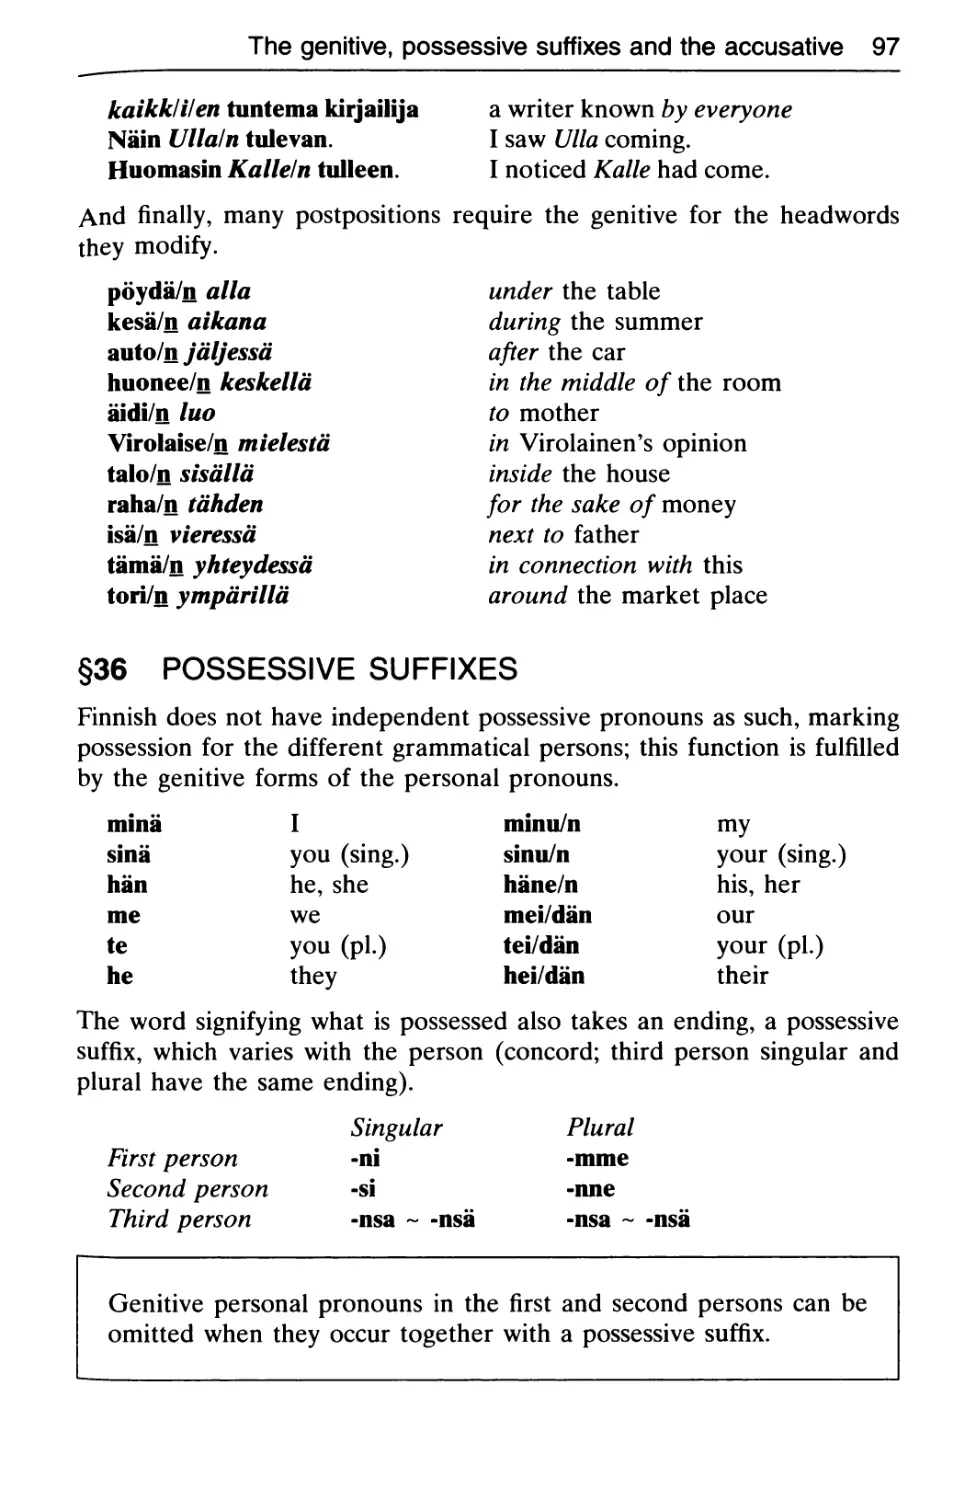 §36 Possessive suffixes